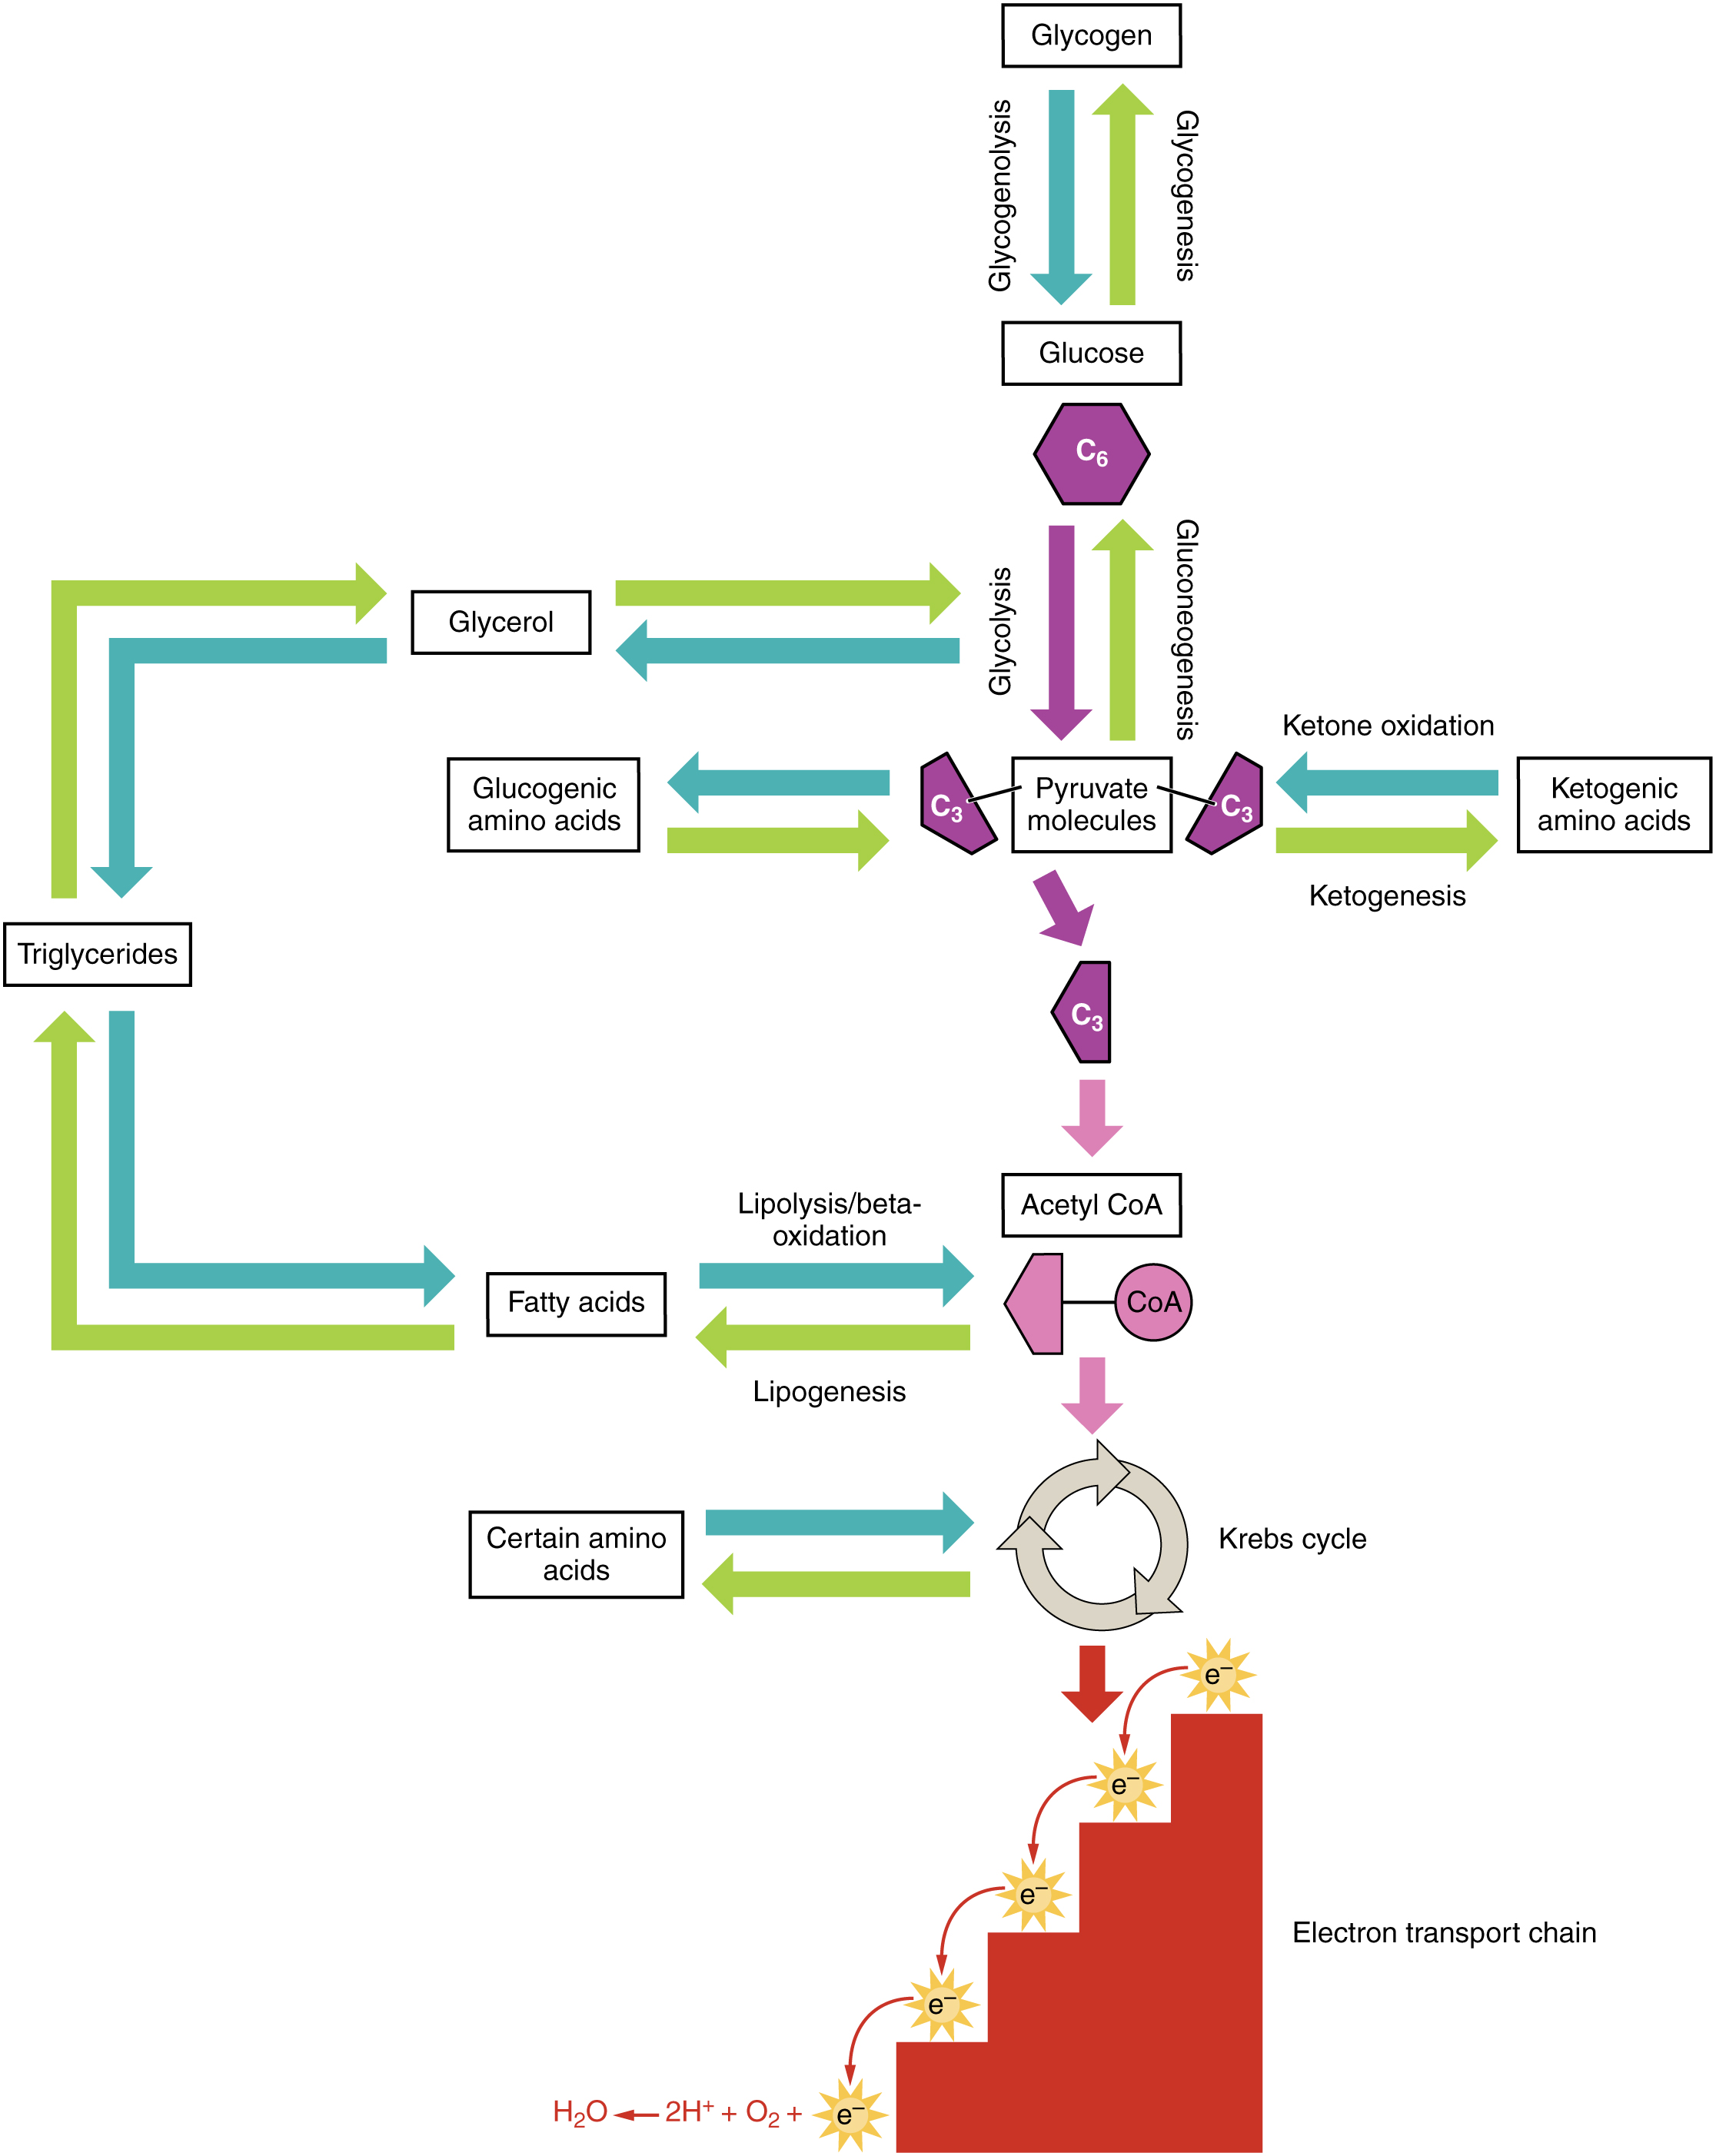 Anabolic and catabolic pathways